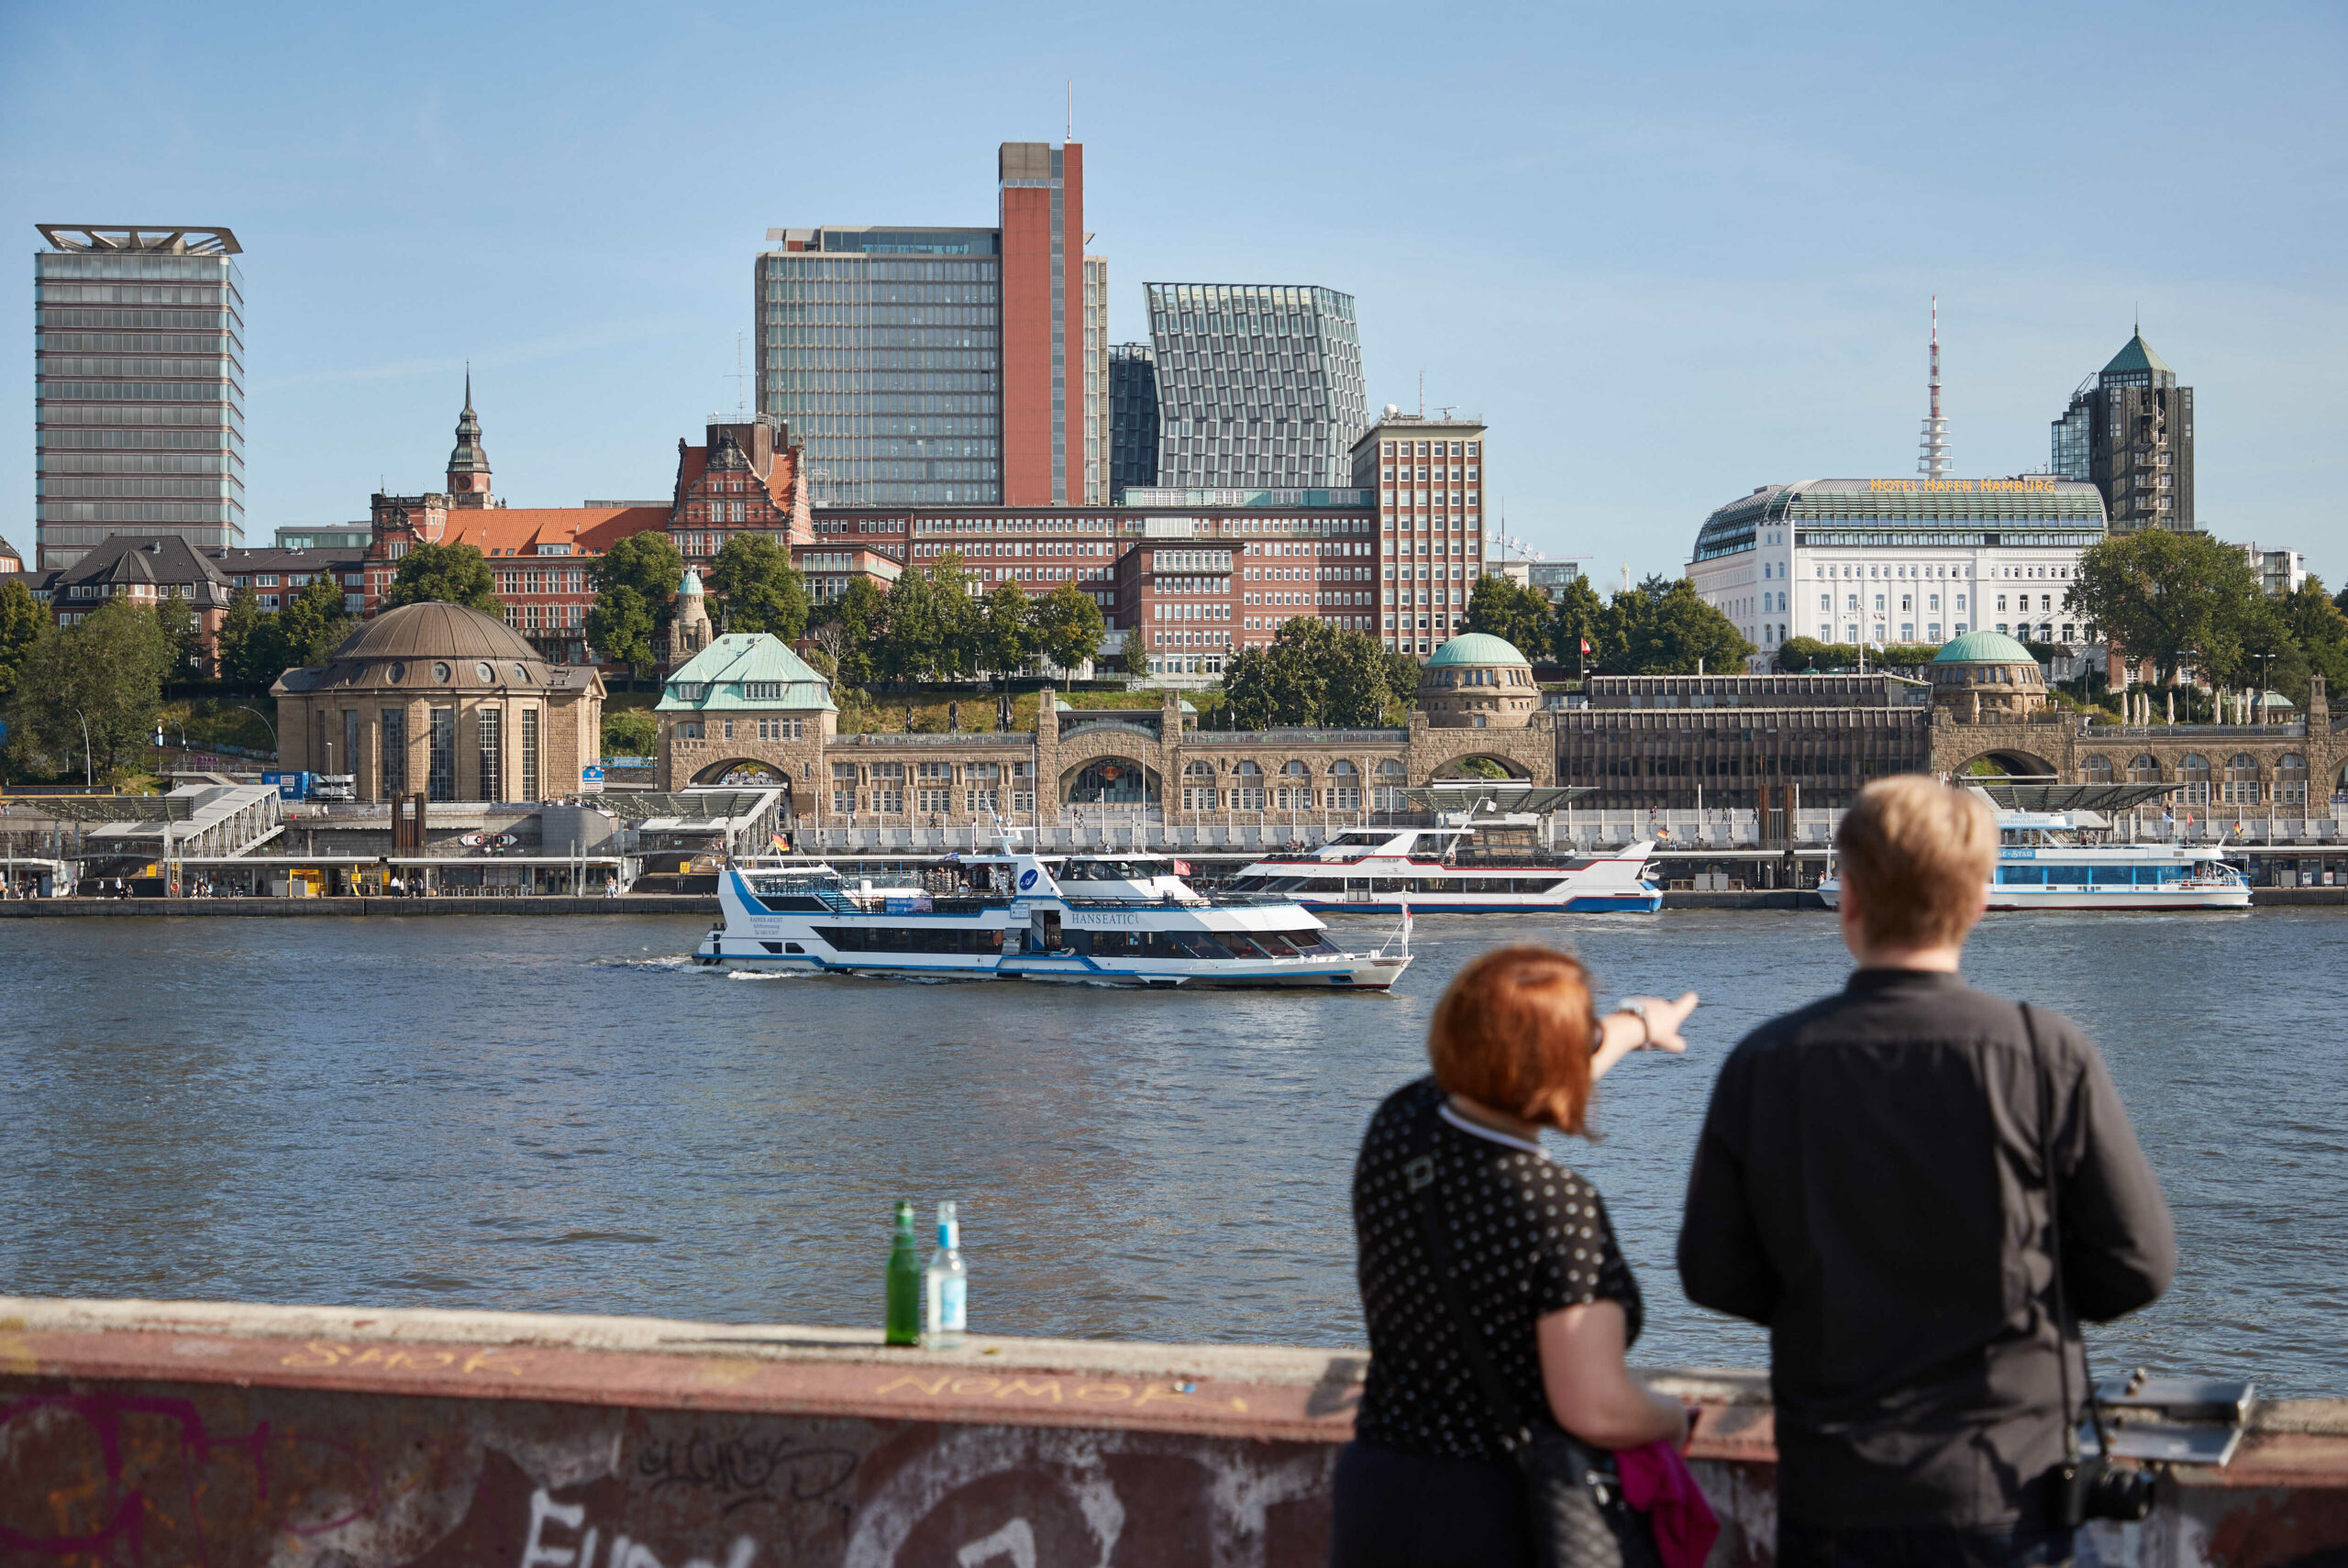 Touristen betrachten bei Sonnenschein im Hamburger Hafen die Stadt. Im Hintergrund sind der Alte Elbtunnel und die Landungsbrücken zu sehen.